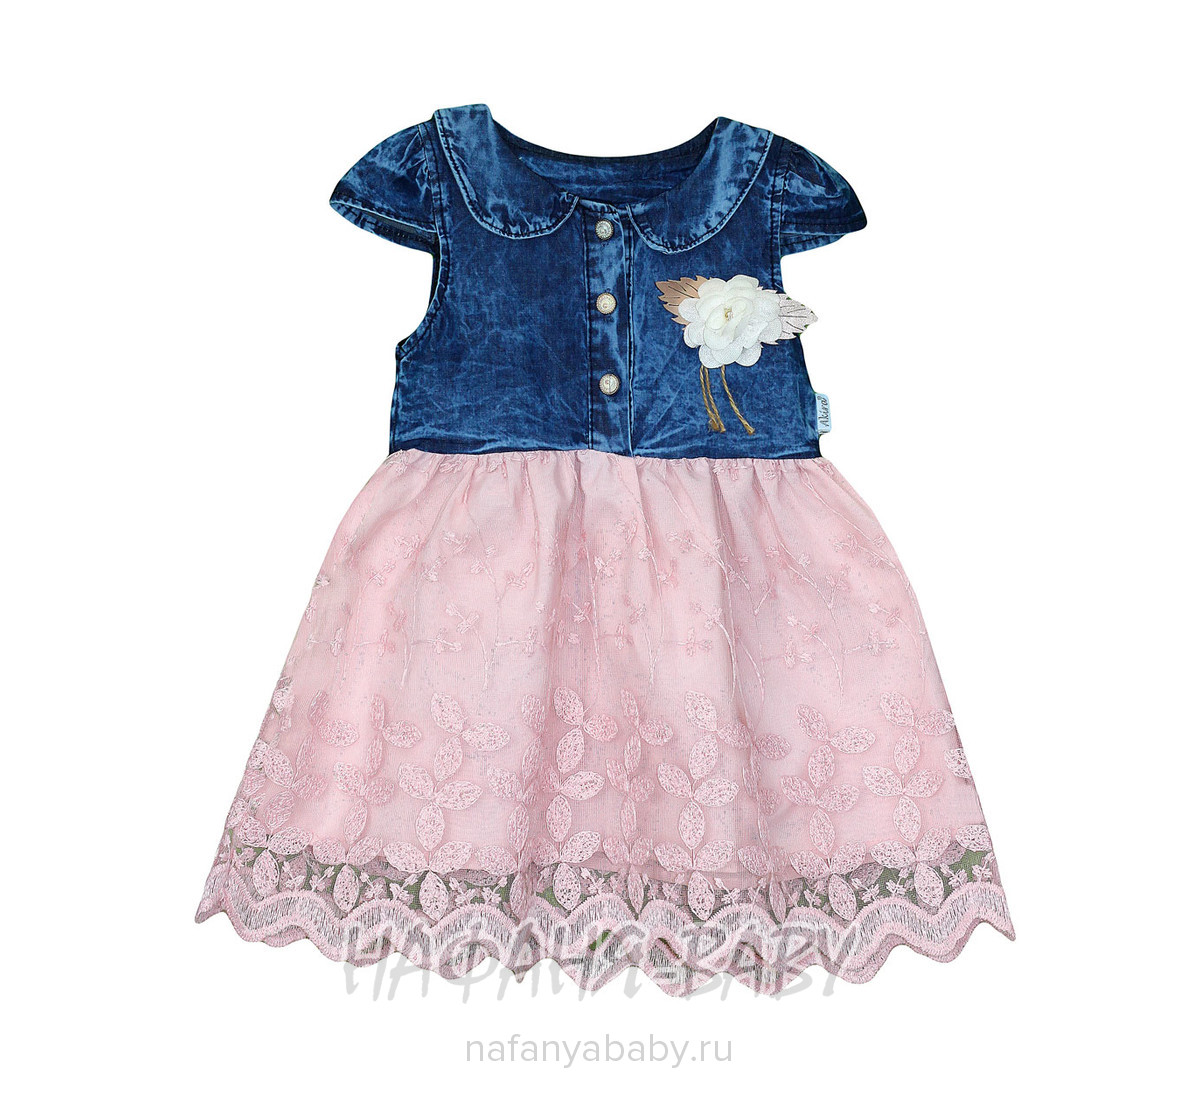 Детское джинсовое платье AKIRA, купить в интернет магазине Нафаня. арт: 2637.